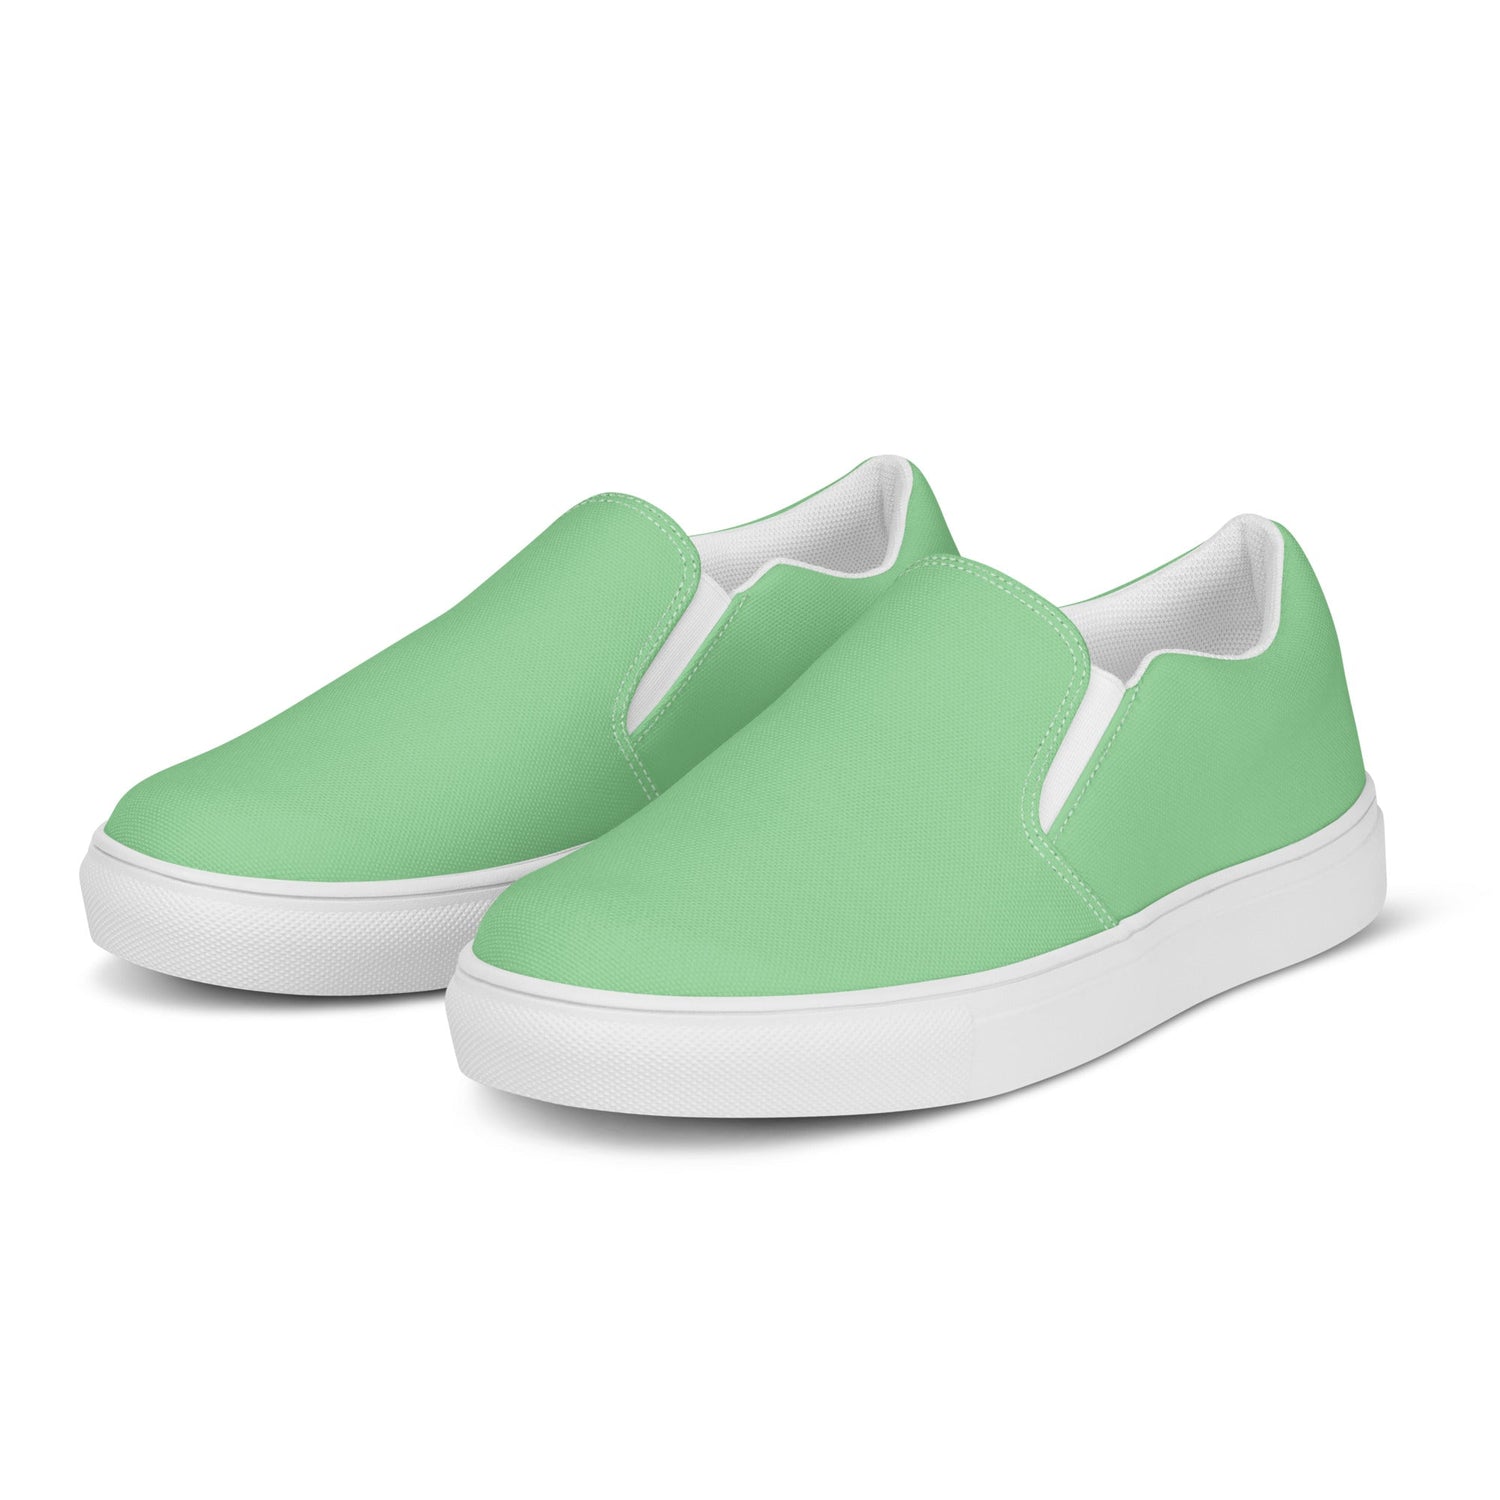 klasneakers Men’s slip-on canvas shoes - Mint